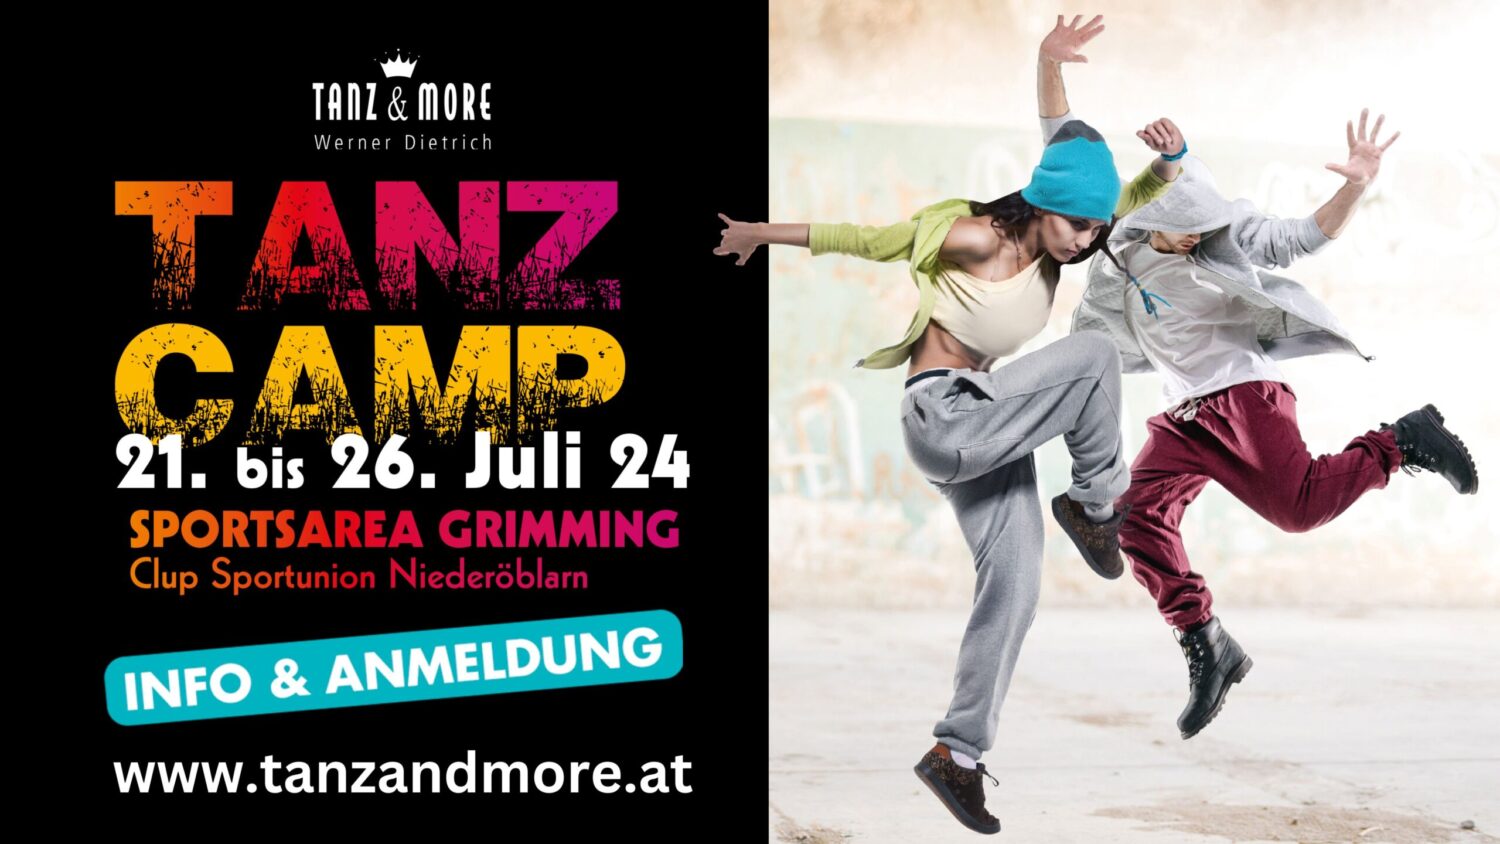 Info & Anmeldebanner Tanzcamp 21. bis 26. Juli 24 in Niederöblarn; im Bild 2 jugendliche Tänzer